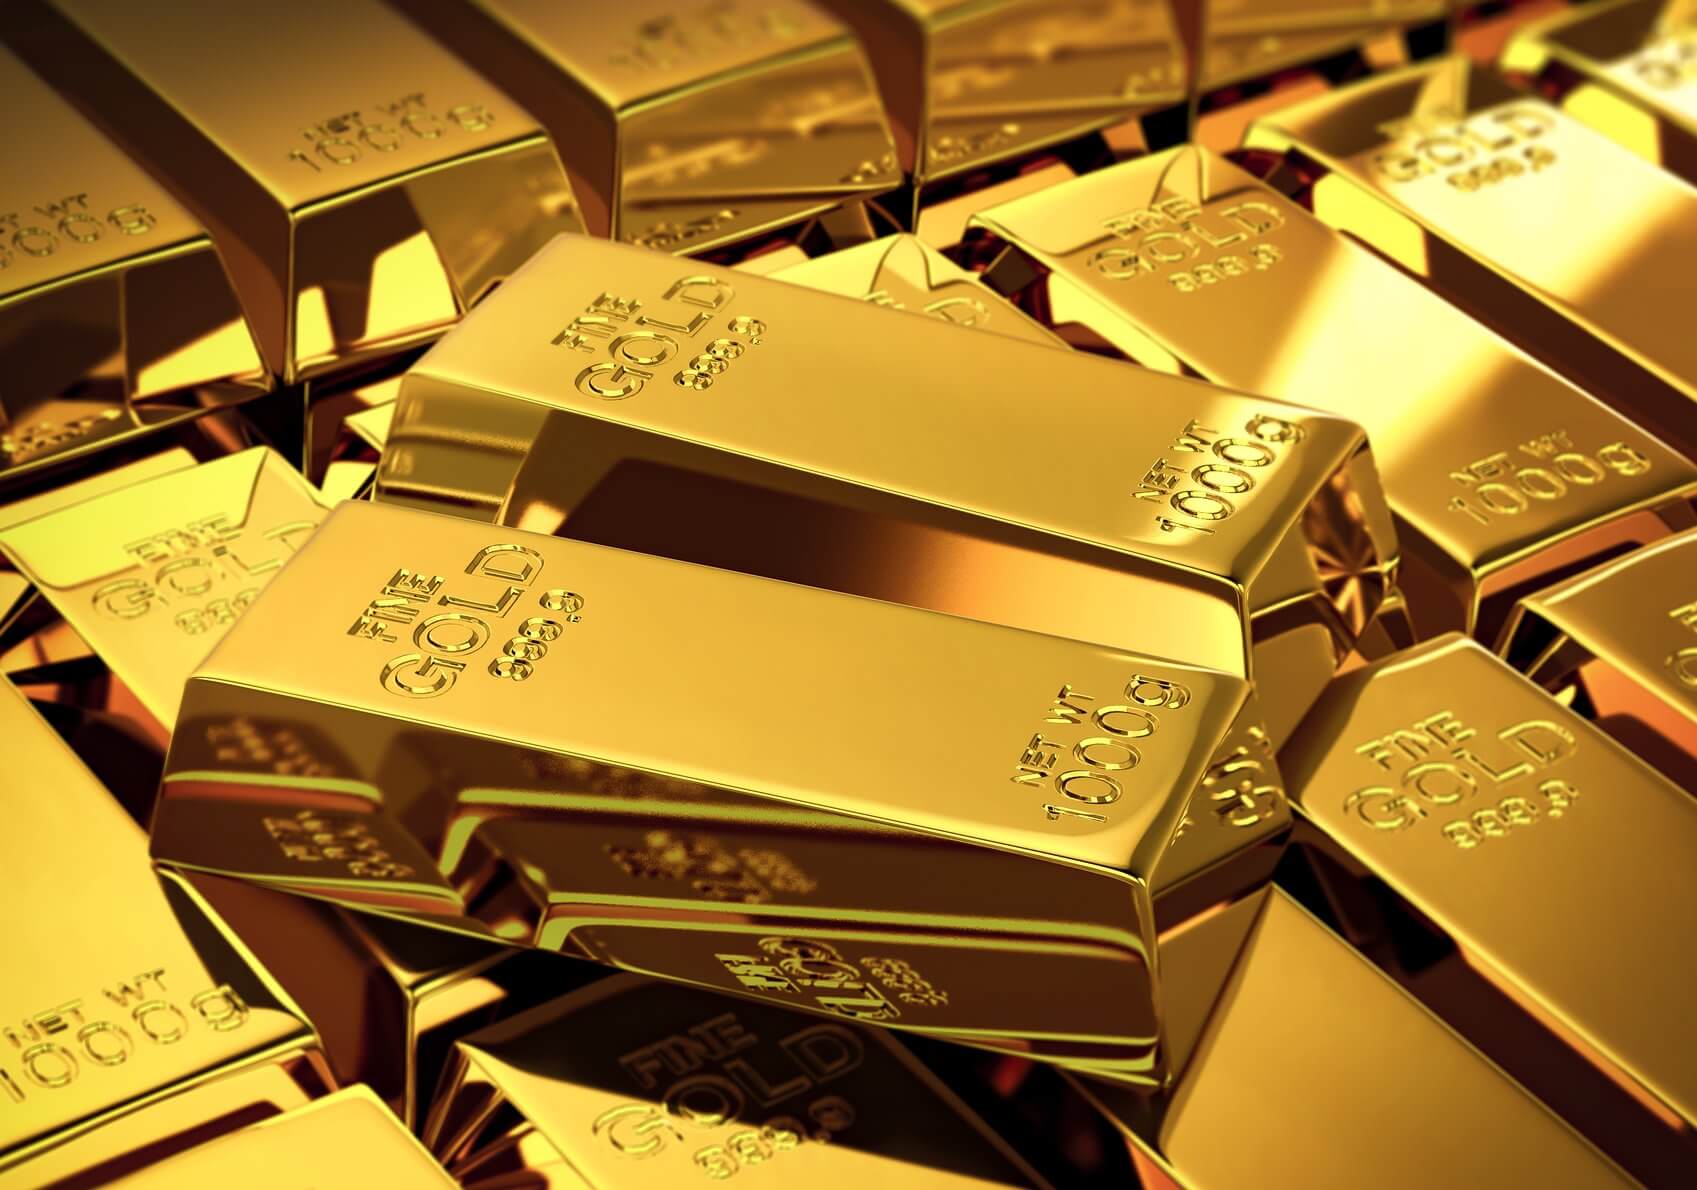 سعر الذهب في سوريا اليوم الأحد 19 1 2020 في الأسواق والبورصة